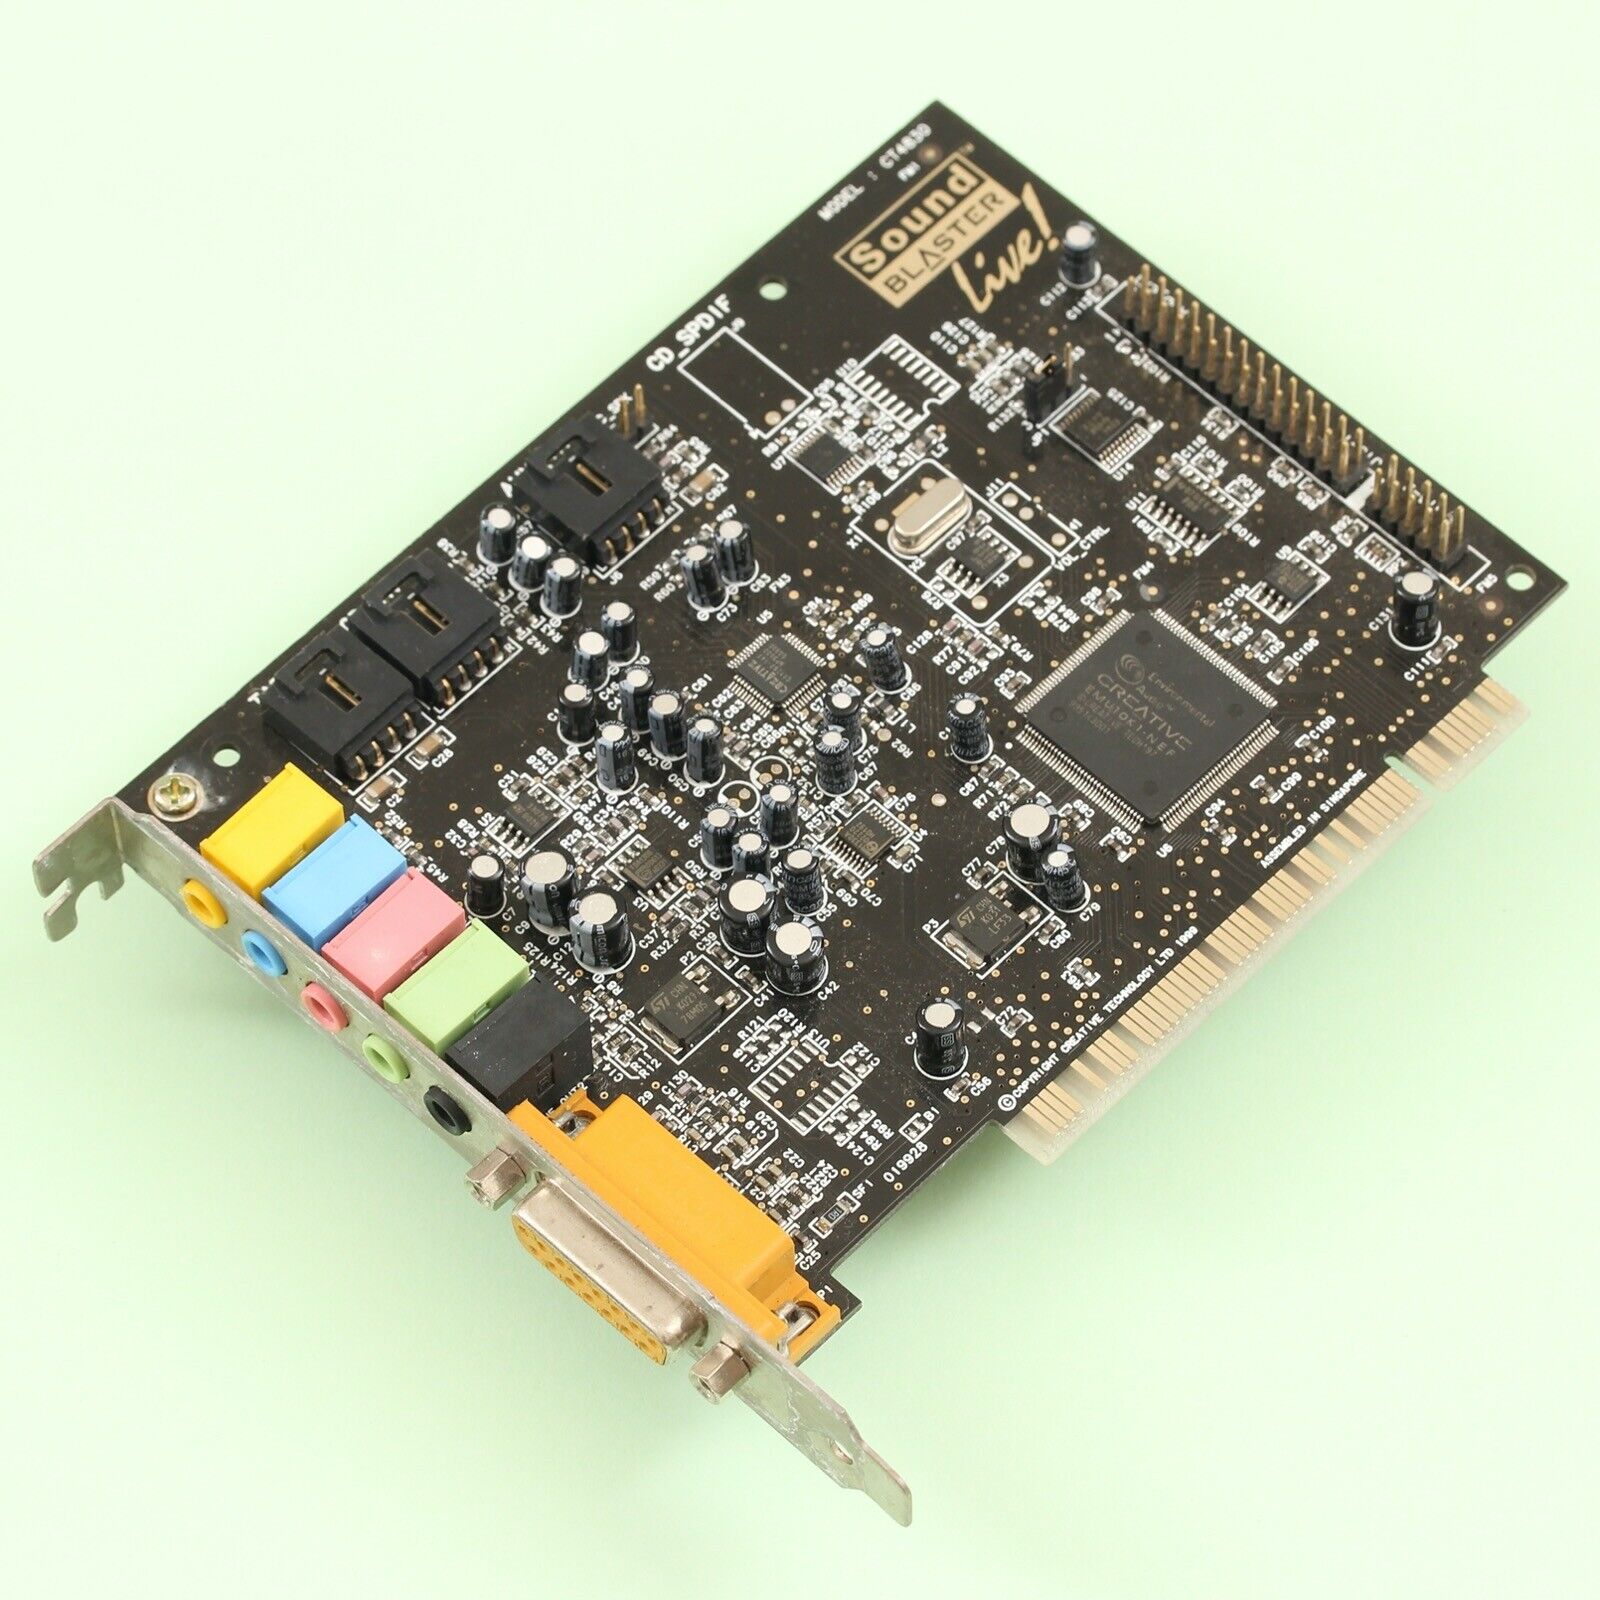 Creative Sound Blaster Live Value PCI Sound Card CT4830 + Driver CD for Win98SE